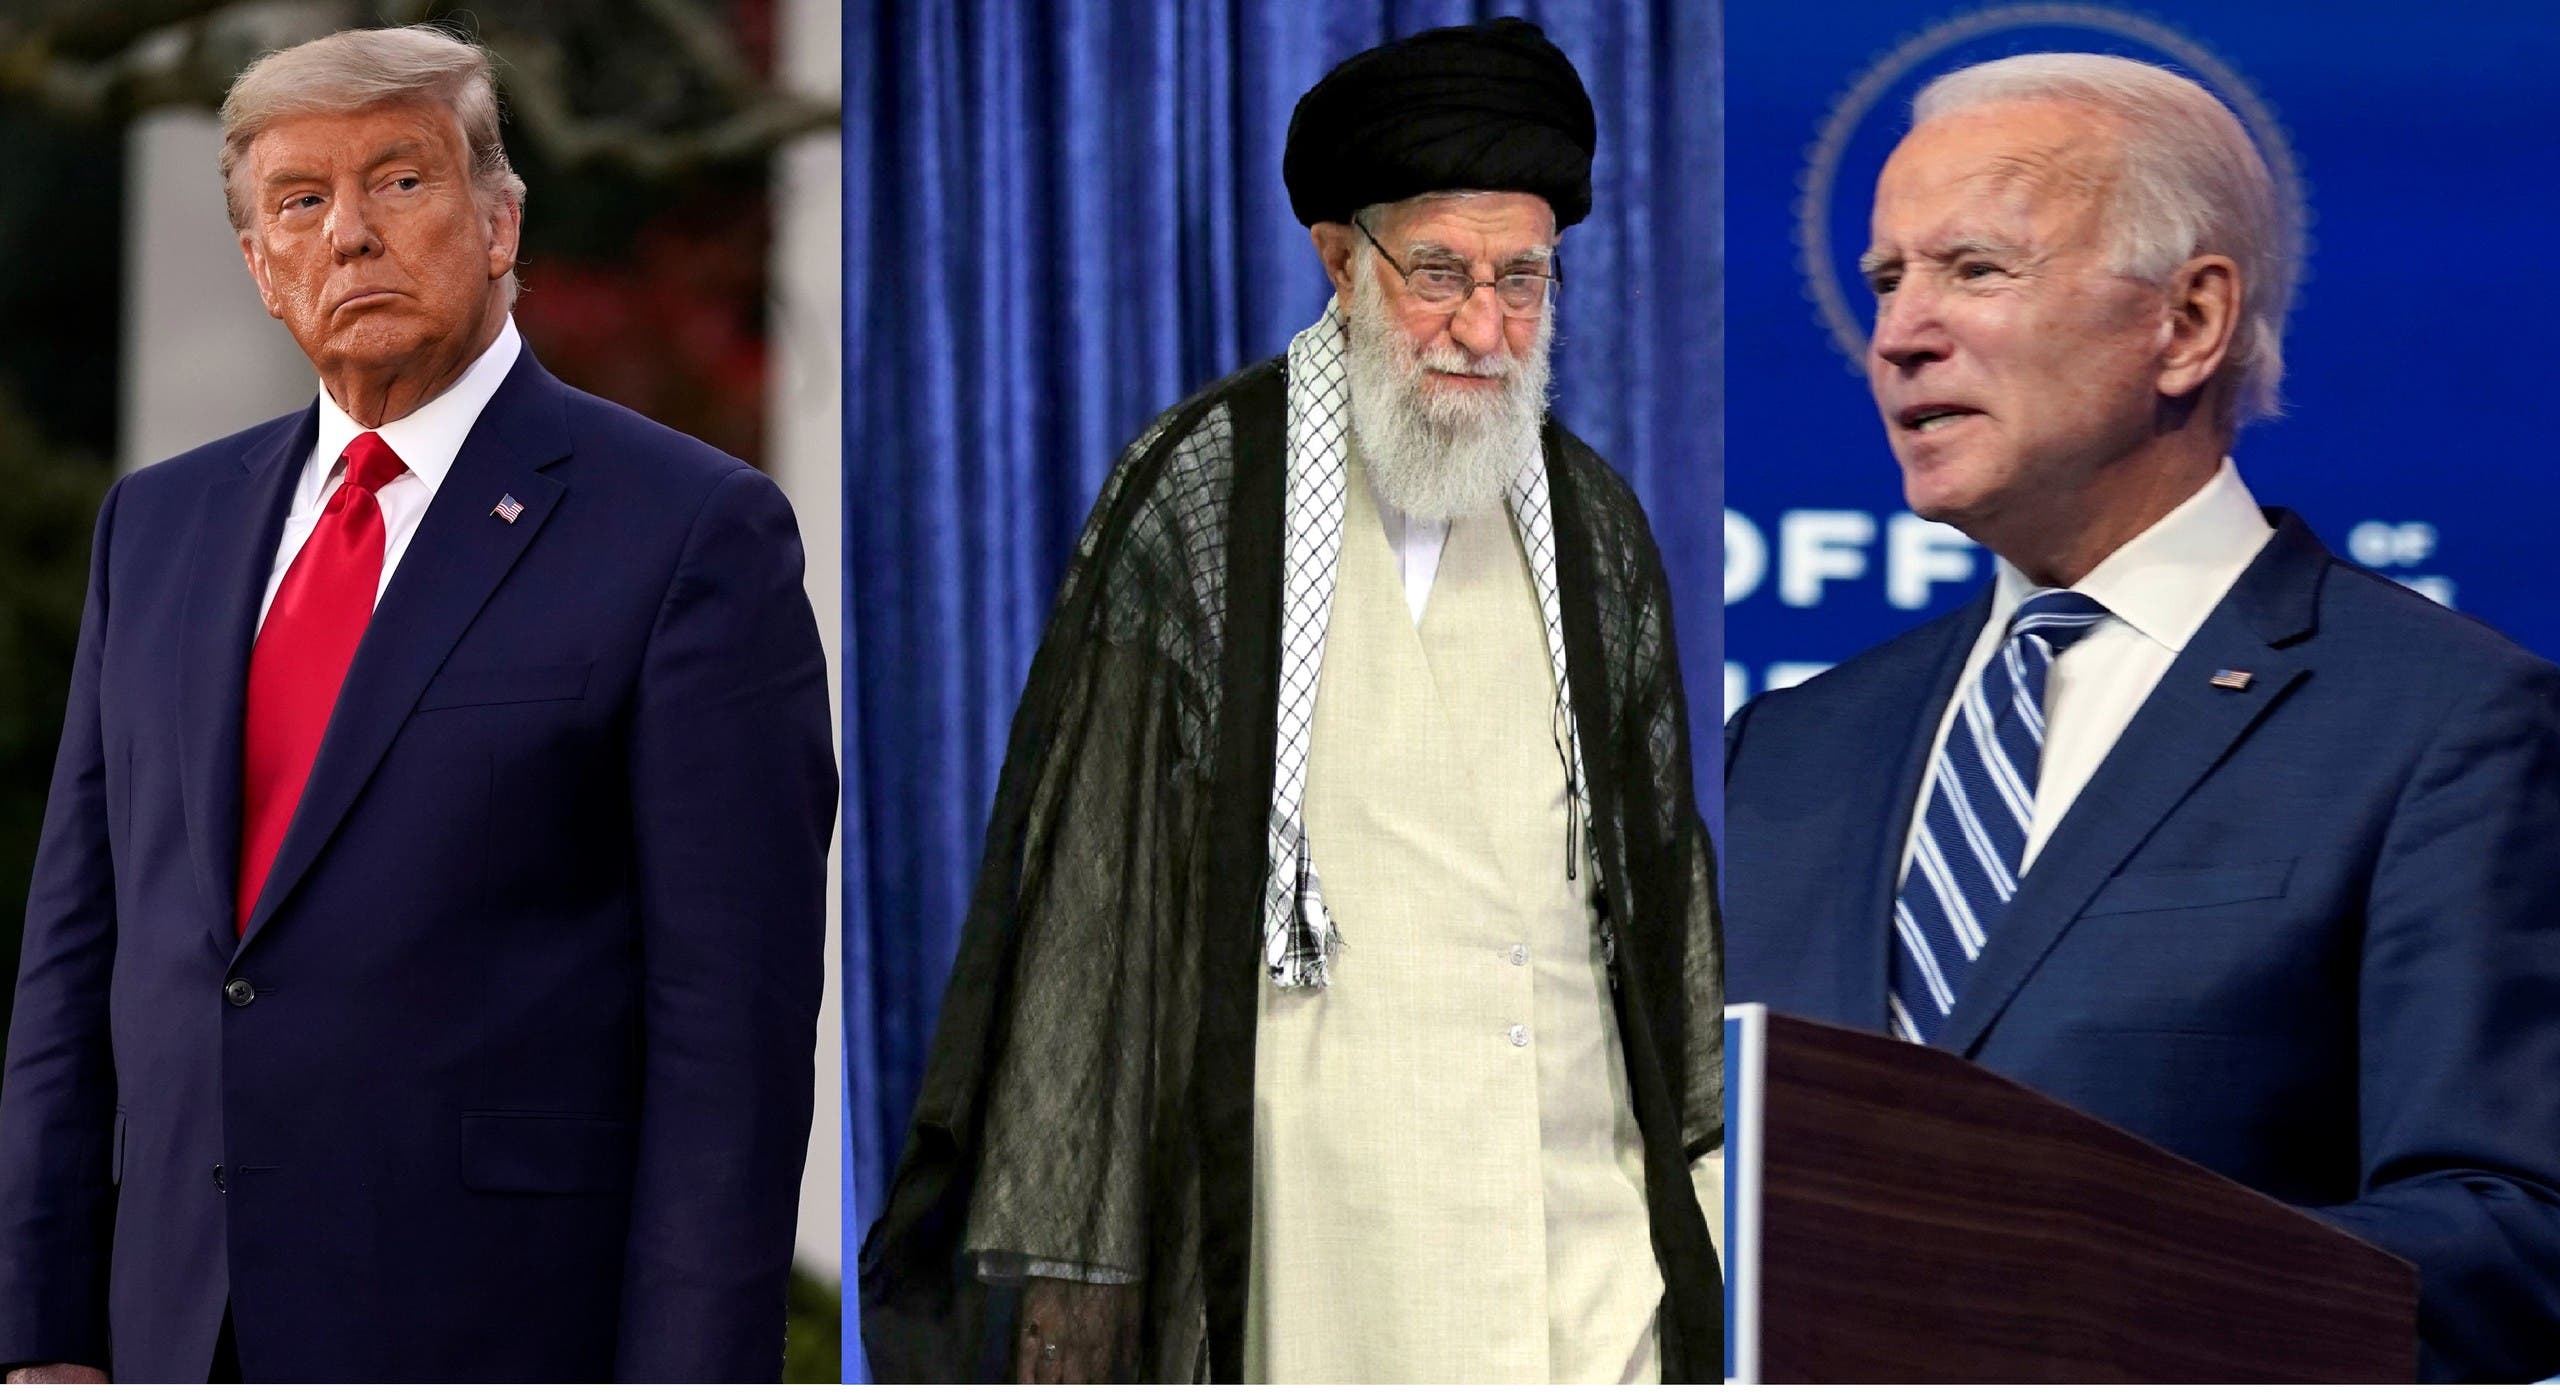 Former US President Donald Trump, left, Iran Supreme Leader Ali Khamenei, center, and US President Joe Biden, right. (AP)